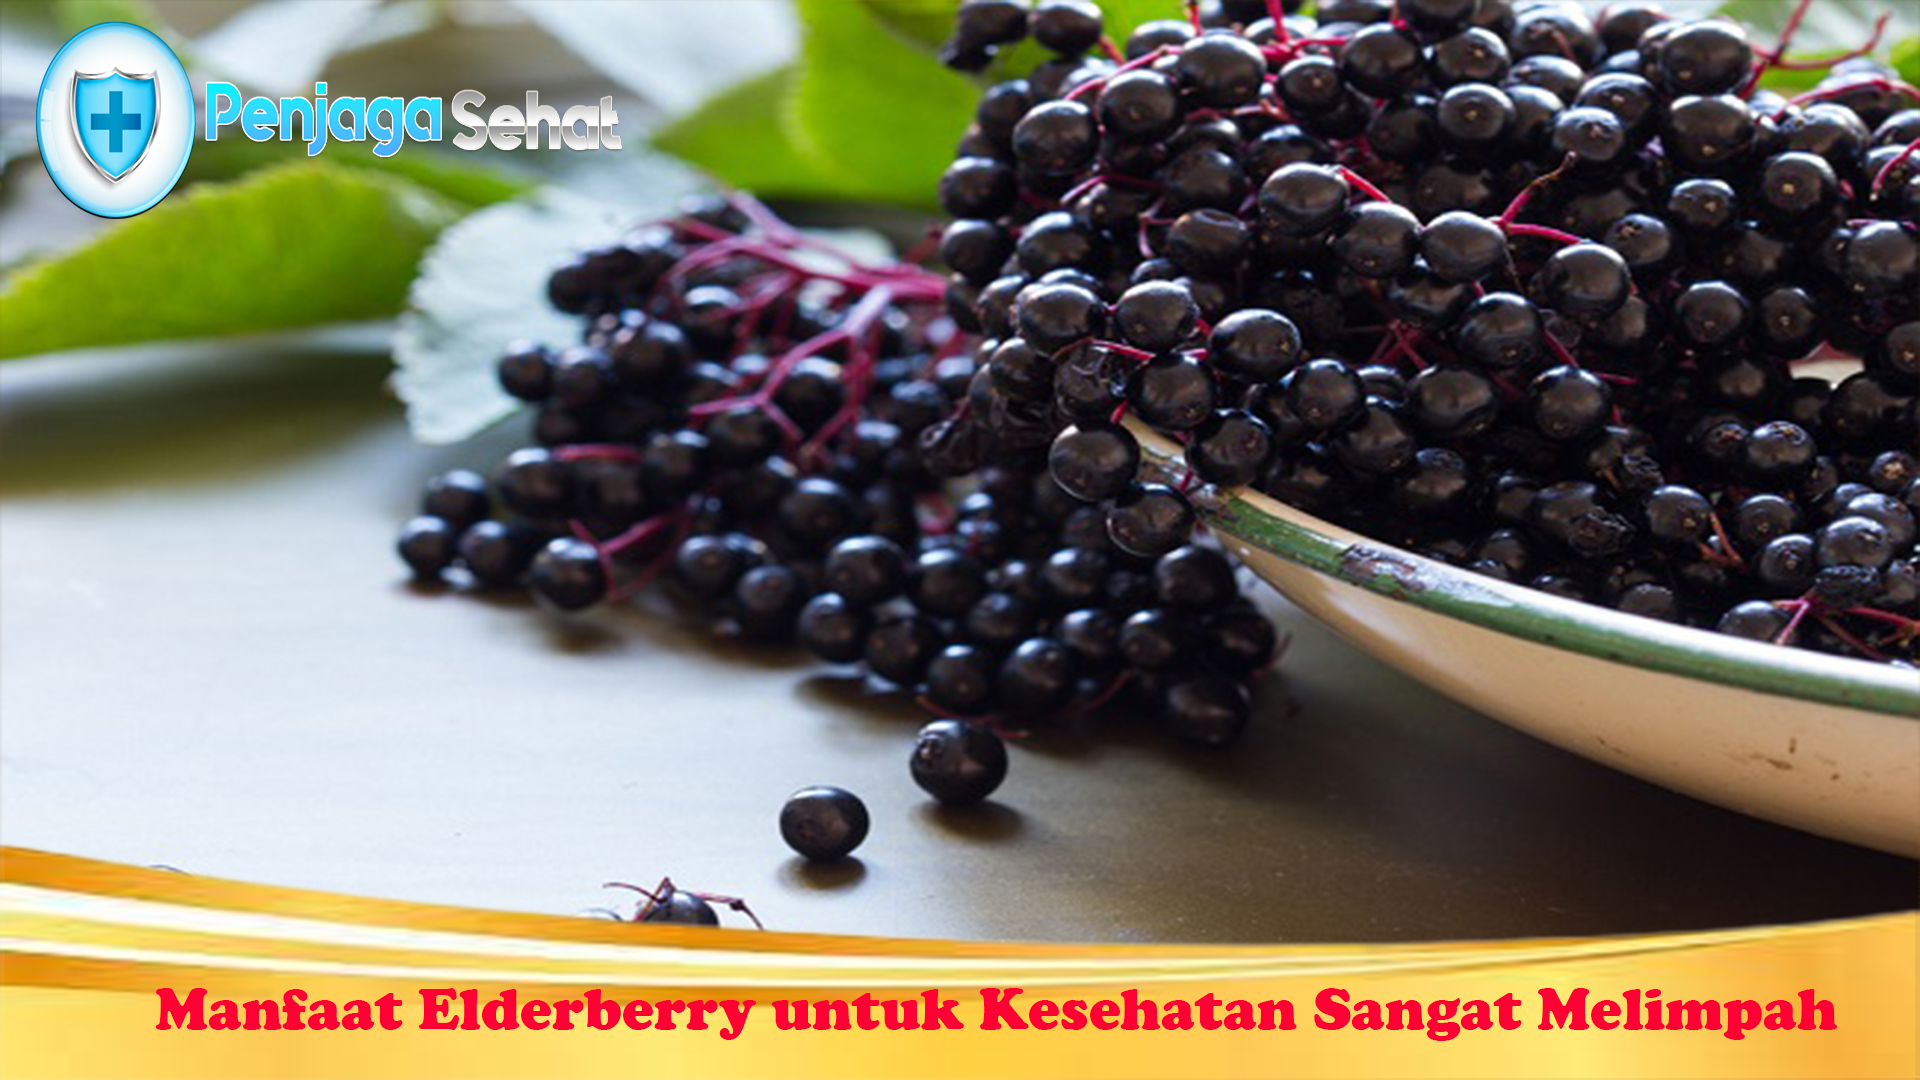 Manfaat Elderberry untuk Kesehatan Sangat Melimpah